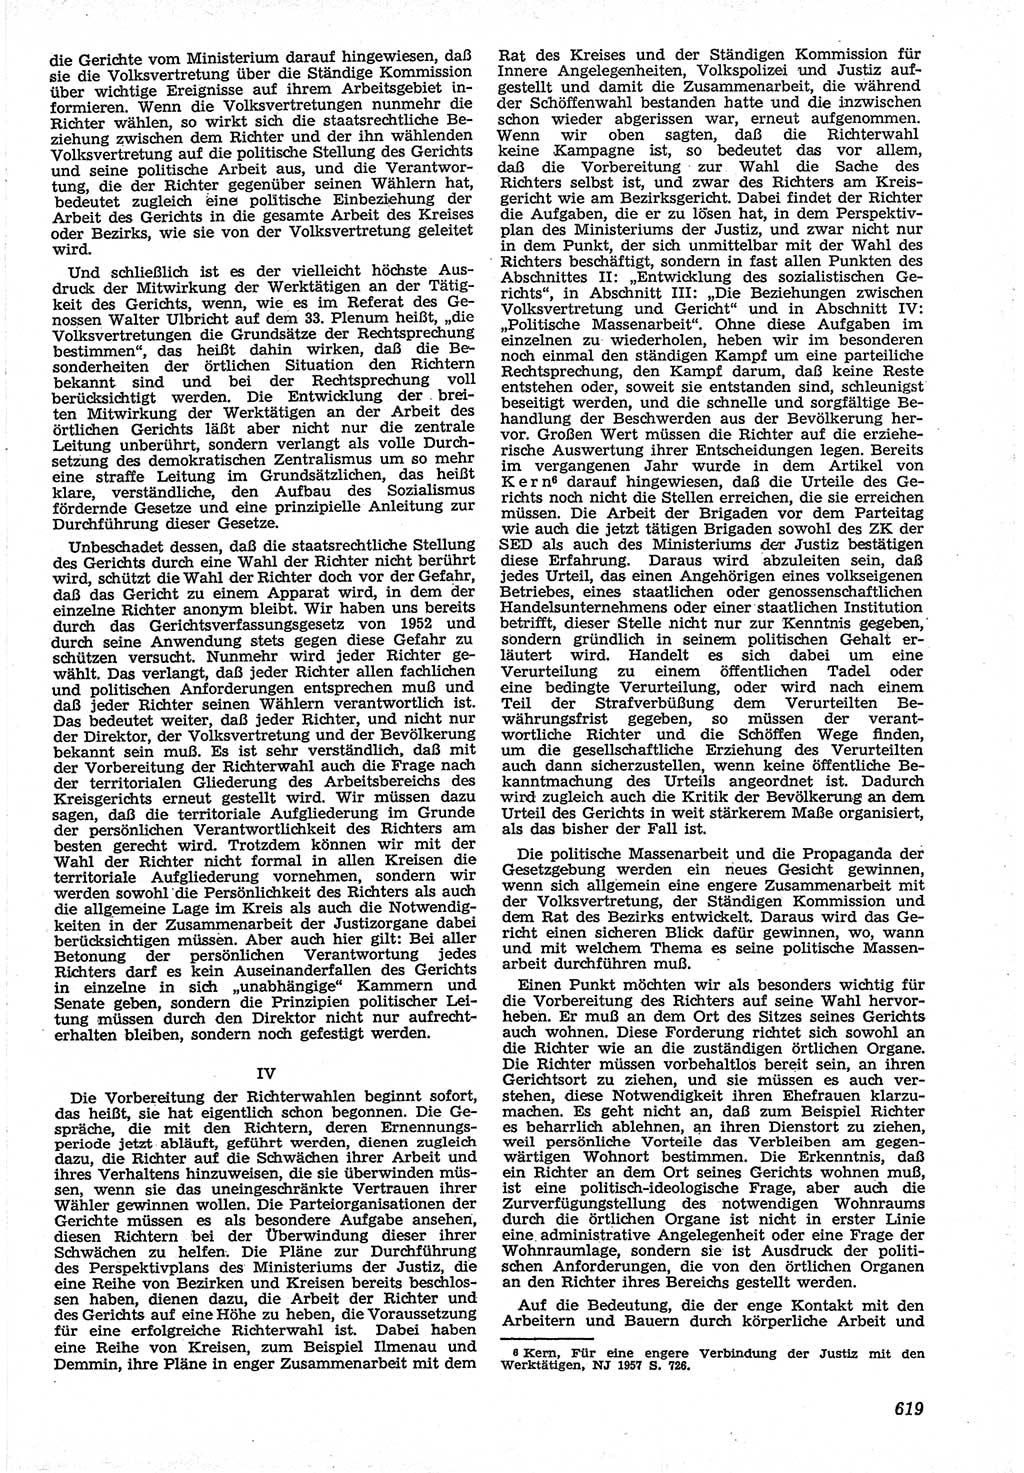 Neue Justiz (NJ), Zeitschrift für Recht und Rechtswissenschaft [Deutsche Demokratische Republik (DDR)], 12. Jahrgang 1958, Seite 619 (NJ DDR 1958, S. 619)